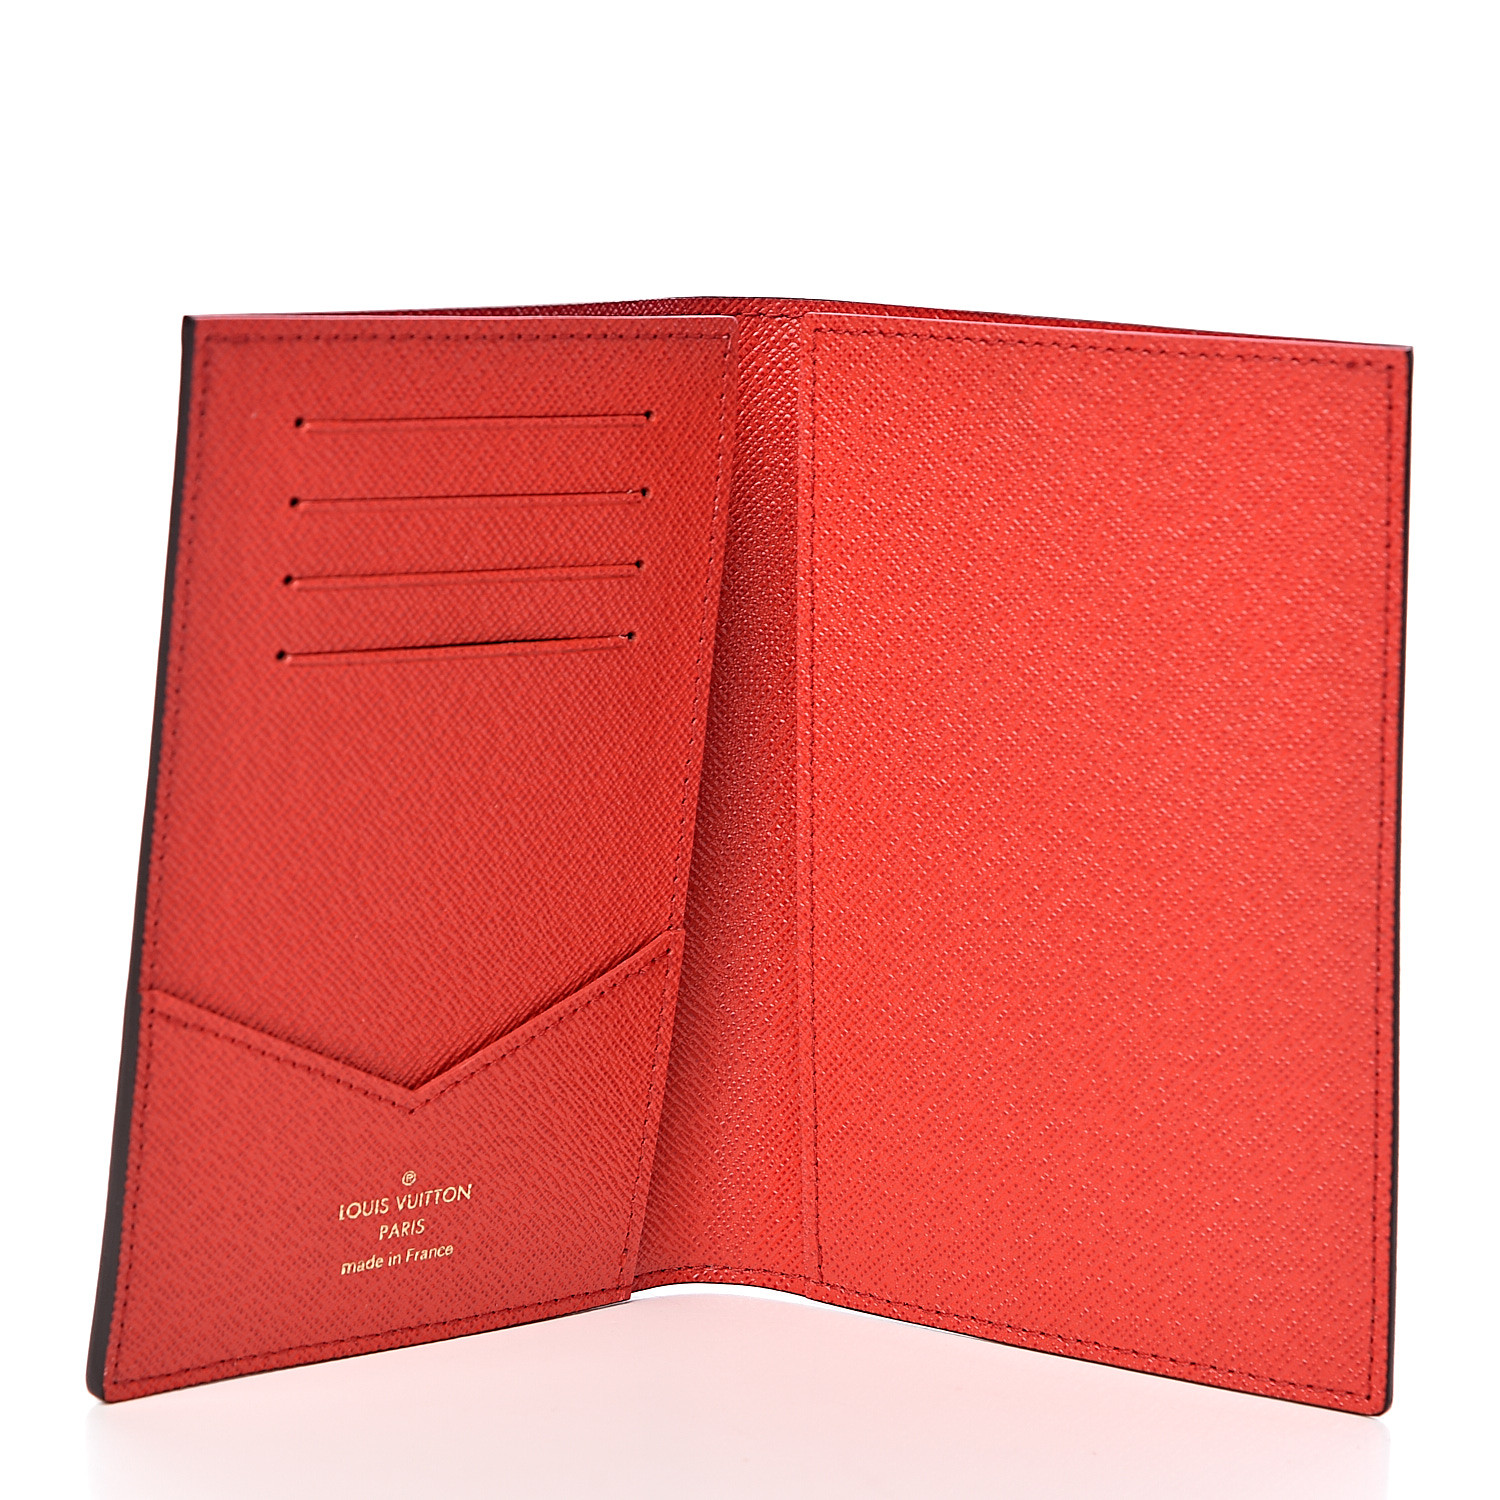 LOUIS VUITTON Monogram Vivienne Xmas Paris Passport Cover Rouge 484074